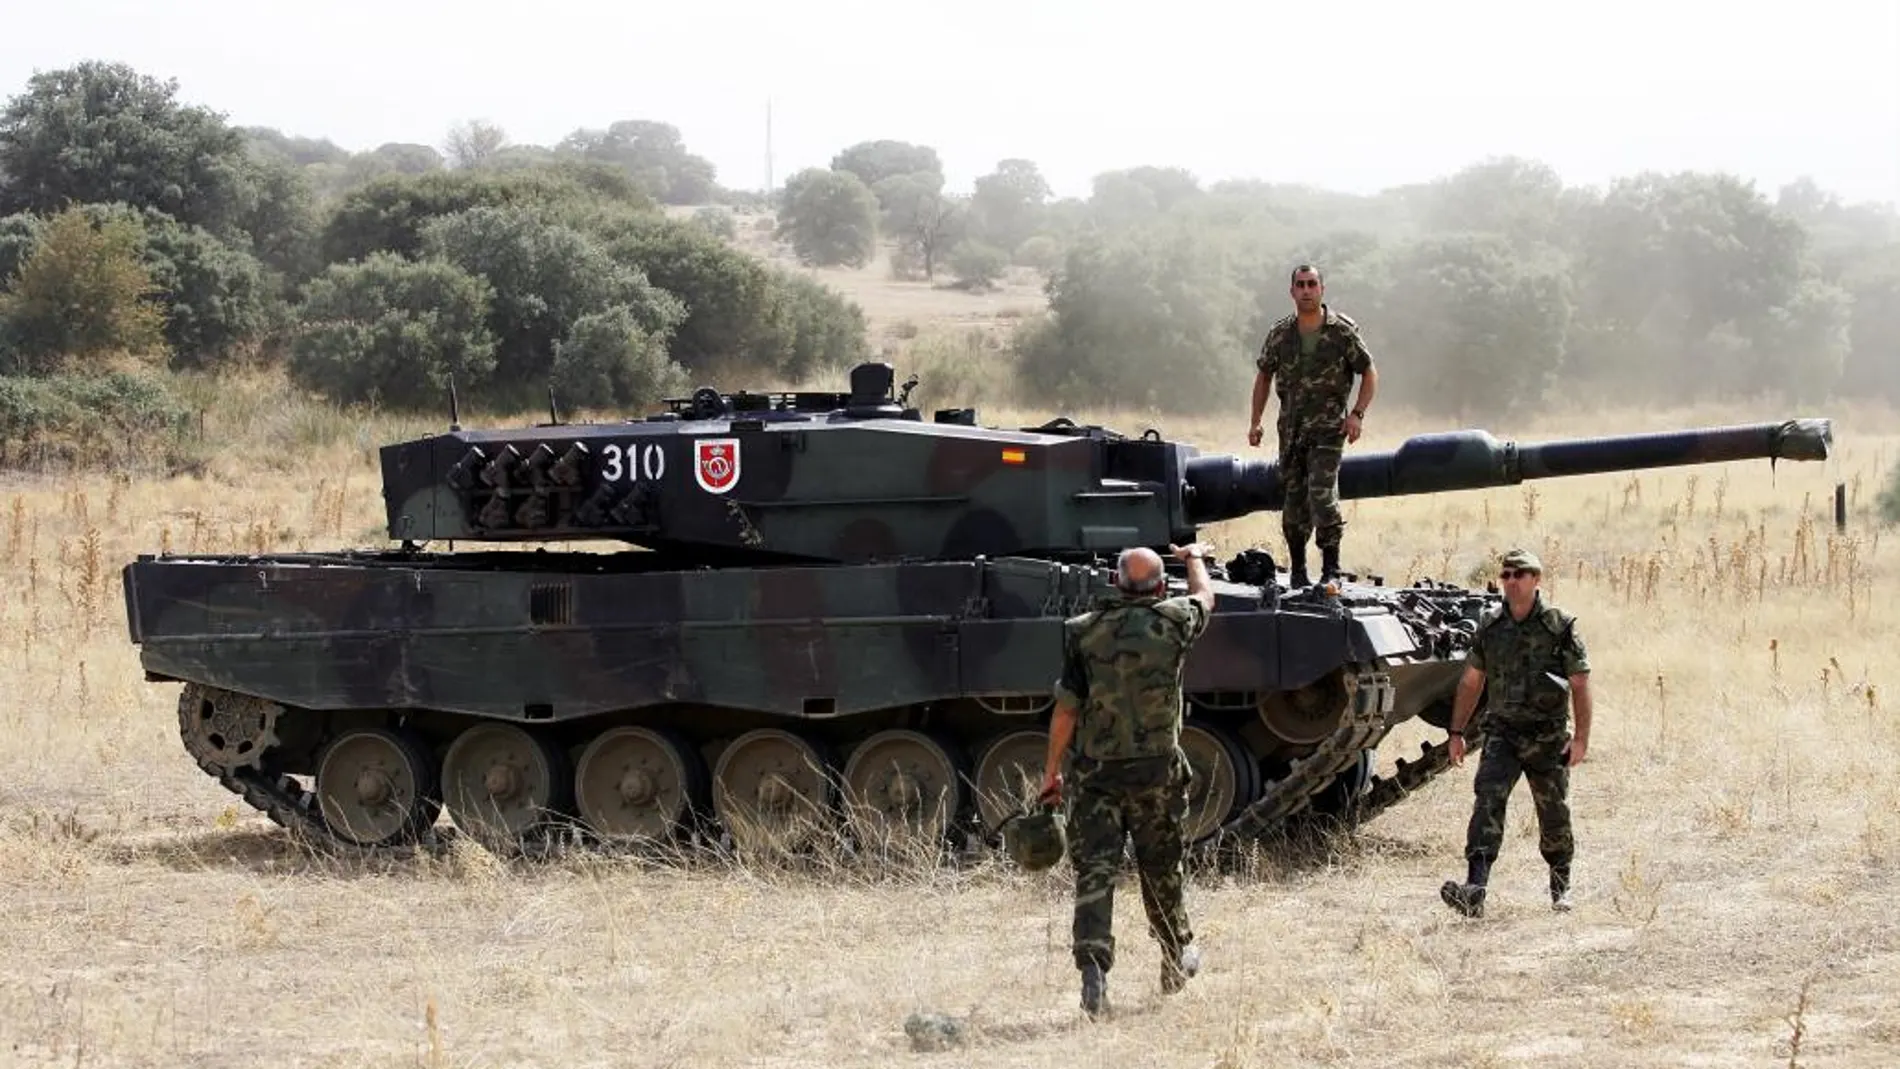 Imagen de un carro de combate Leopard del Ejército de Tierra español